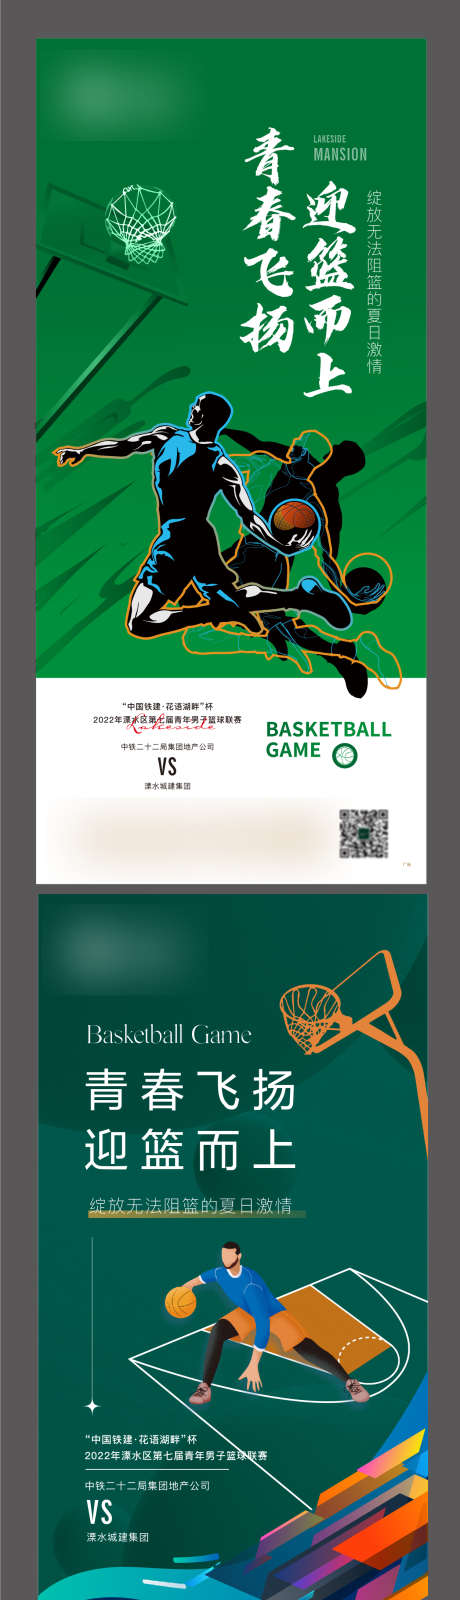 地产 篮球 比赛 青春 热烈_源文件下载_AI格式_1253X4815像素-热烈,青春,比赛,篮球,地产-作品编号:2023091319006012-源文件库-ywjfx.cn